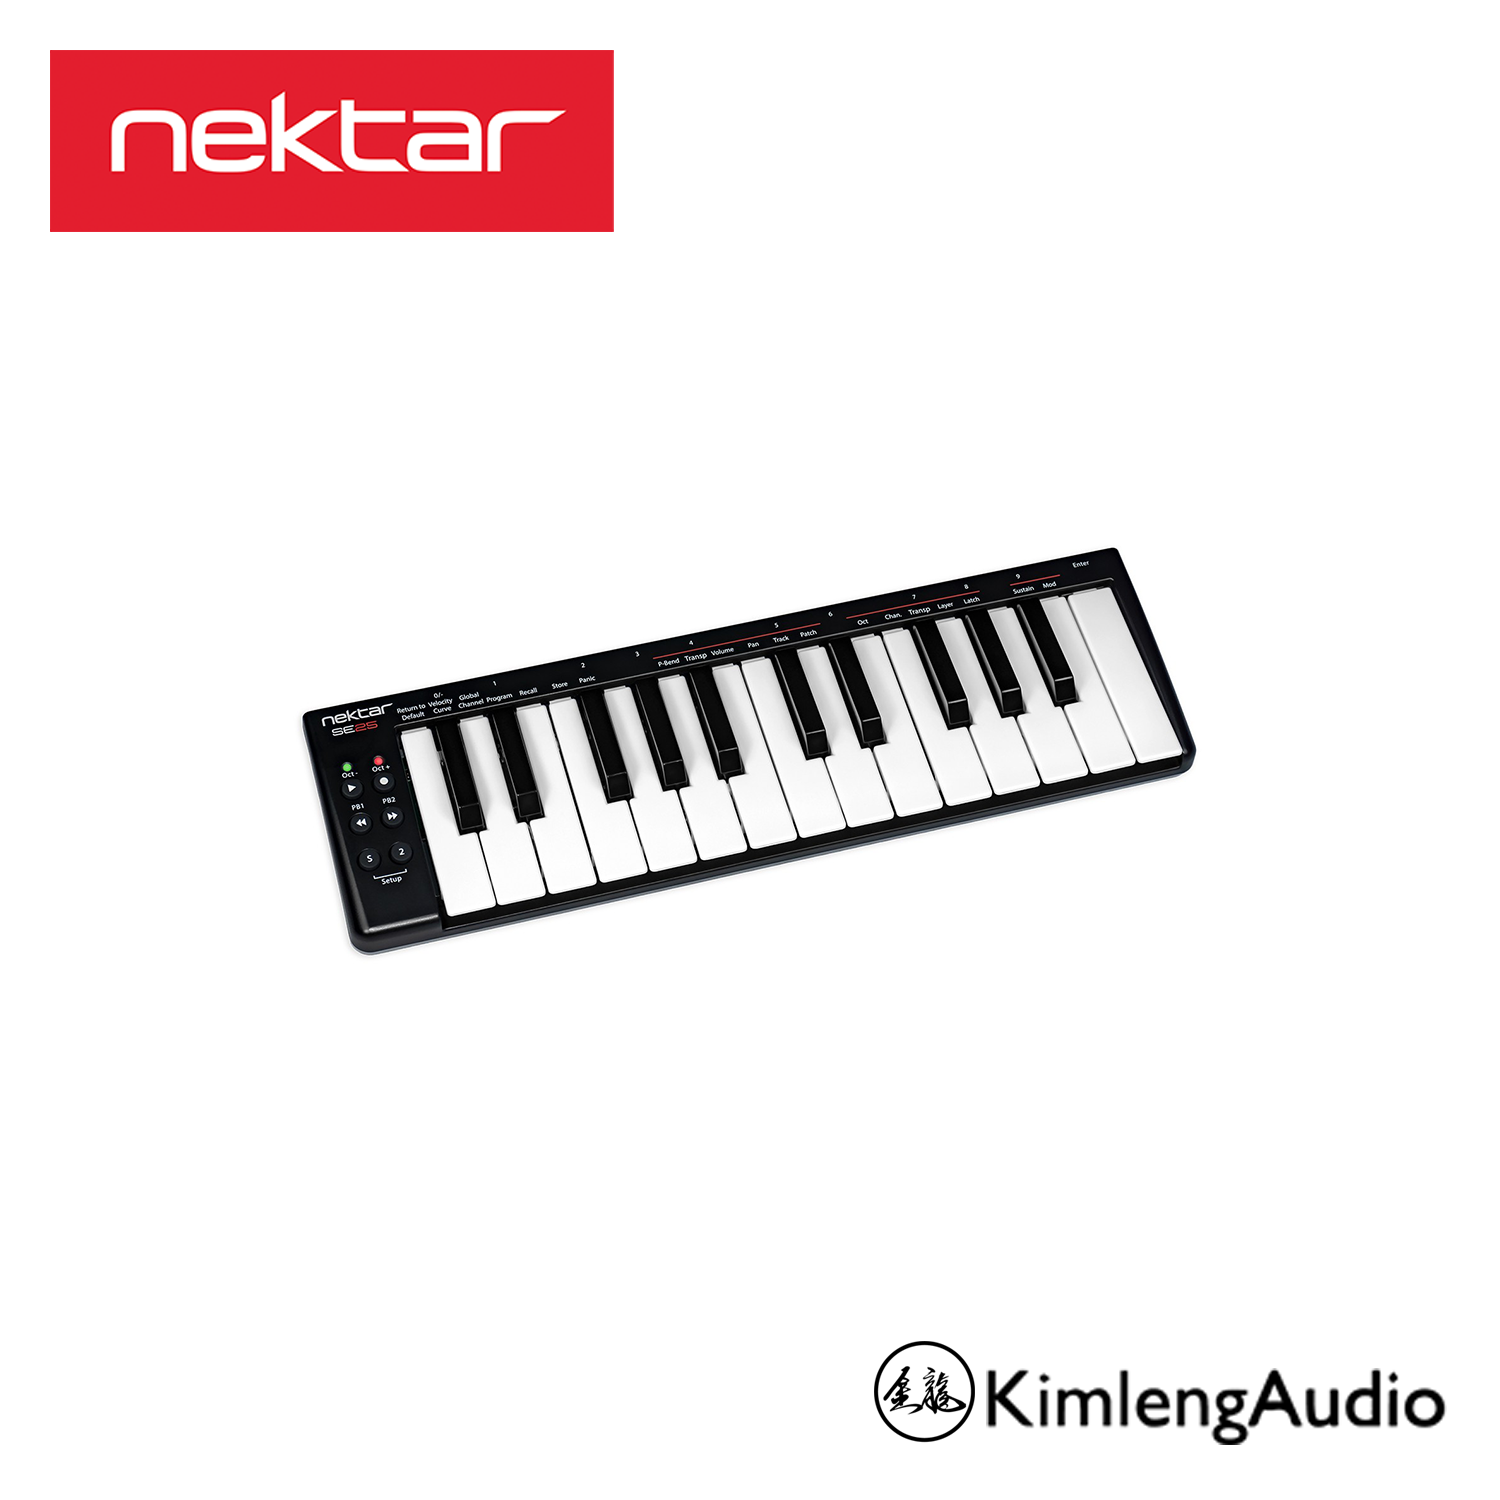 Nektar SE25 MIDI คอนโทรลเลอร์ 25 คีย์ยอดขายอันดับ 1 คุณภาพดีใช้งานง่าย